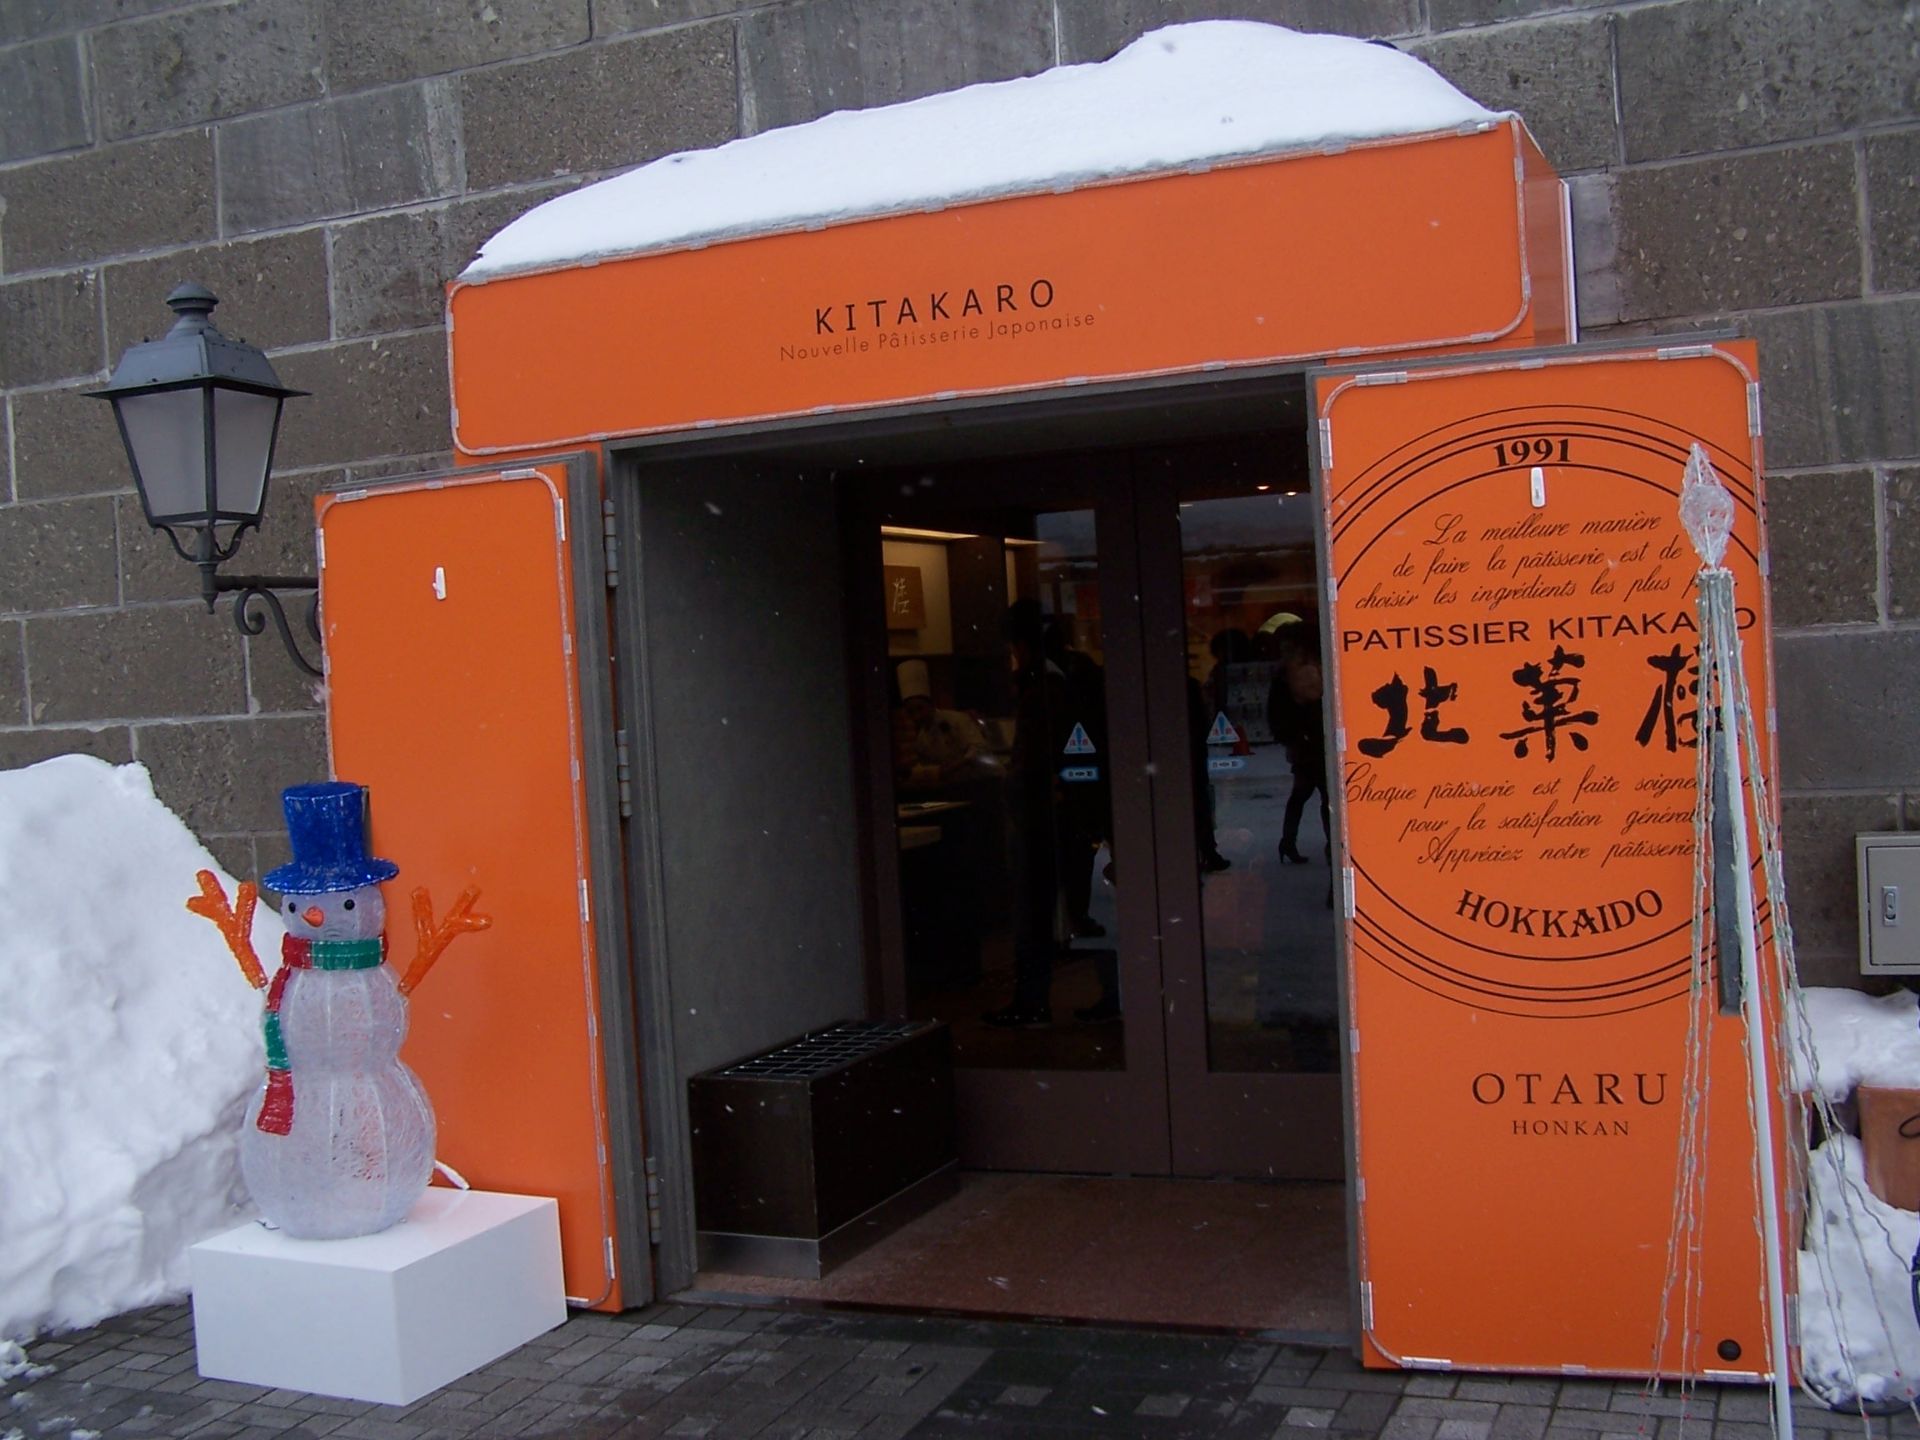 21北菓楼 小樽本馆店 美食餐厅 糕很出名的 还可以免费帮 去哪儿攻略